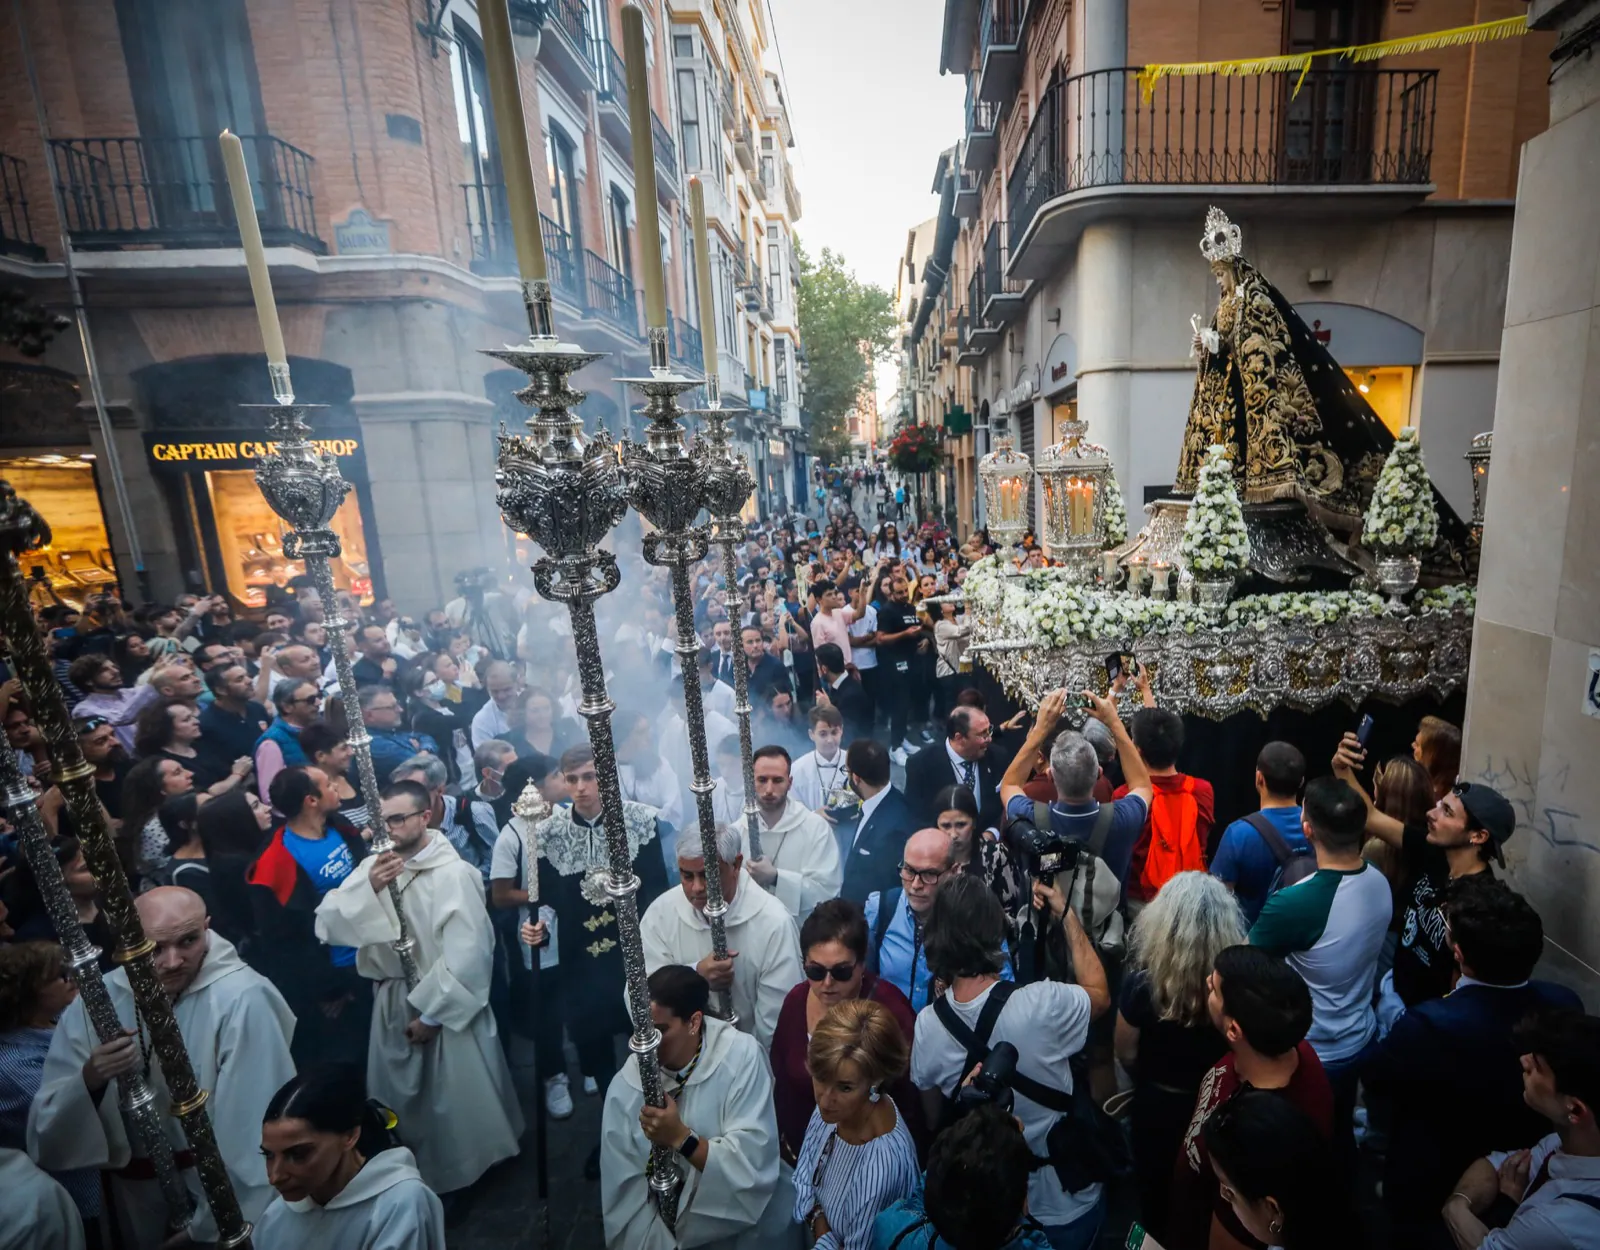 Fotos: Las imágenes de la procesión de coronación de la Soledad en Granada